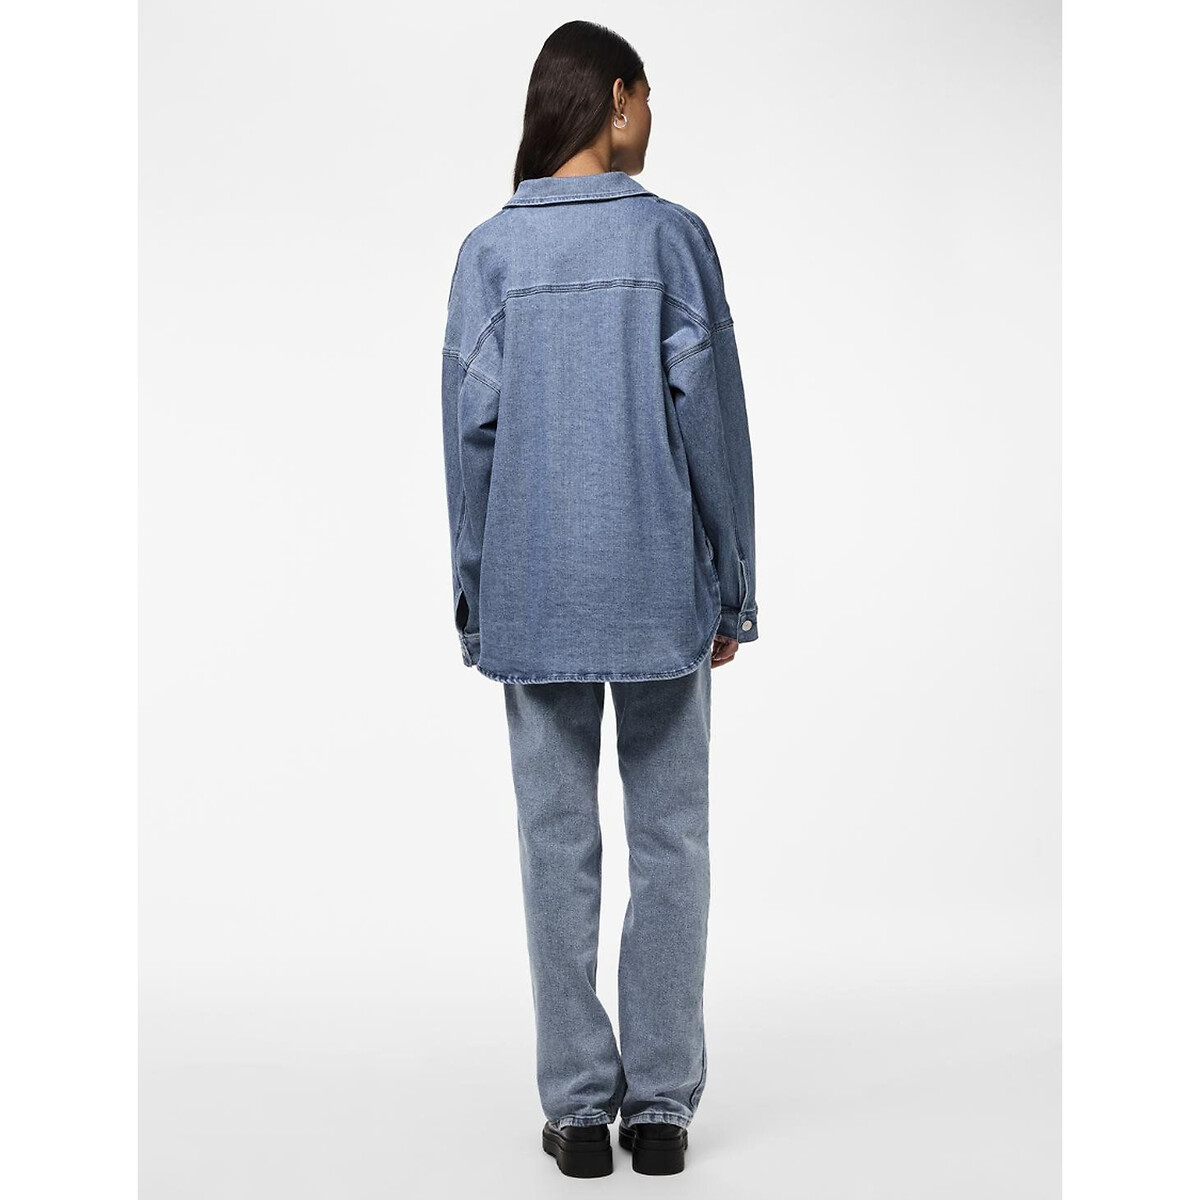 Куртка из джинсовой ткани средней длины  XL синий LaRedoute, размер XL - фото 4